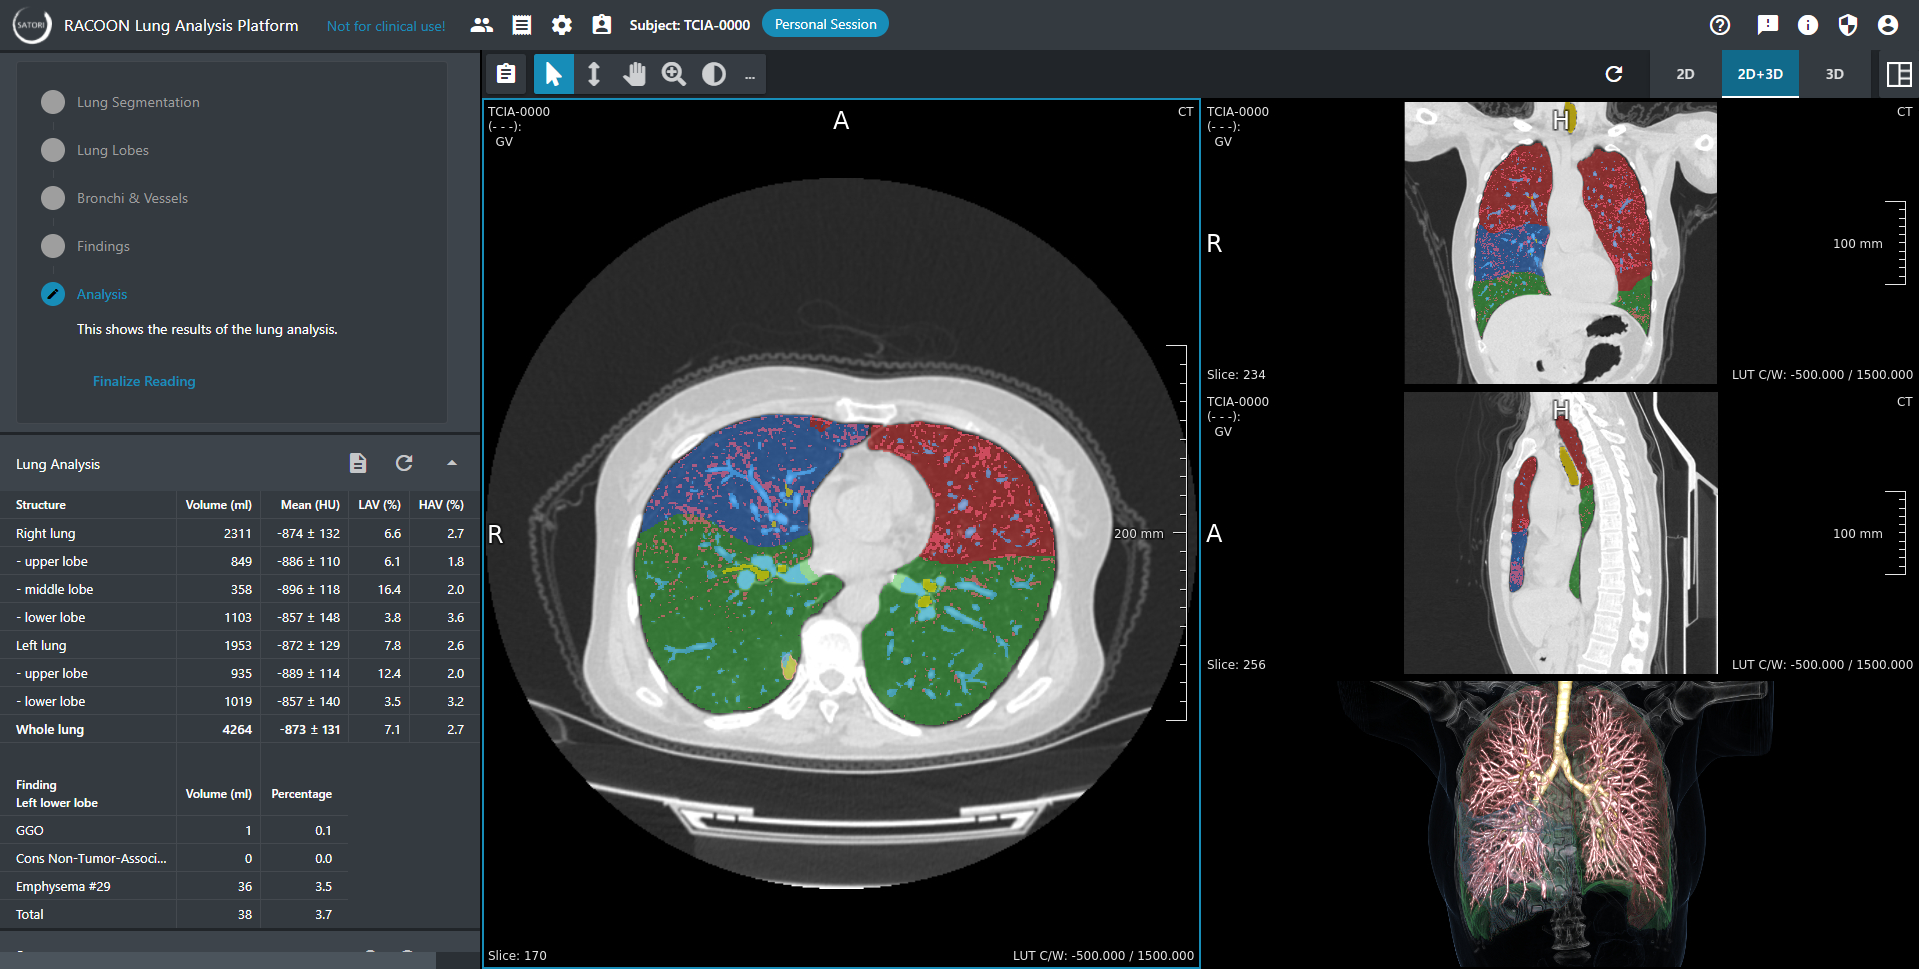 Ein SATORI konfiguriert für Lungenbilder zeigt ein CT mit Analyseergebnissen und ein 3D Rendering der Lunge